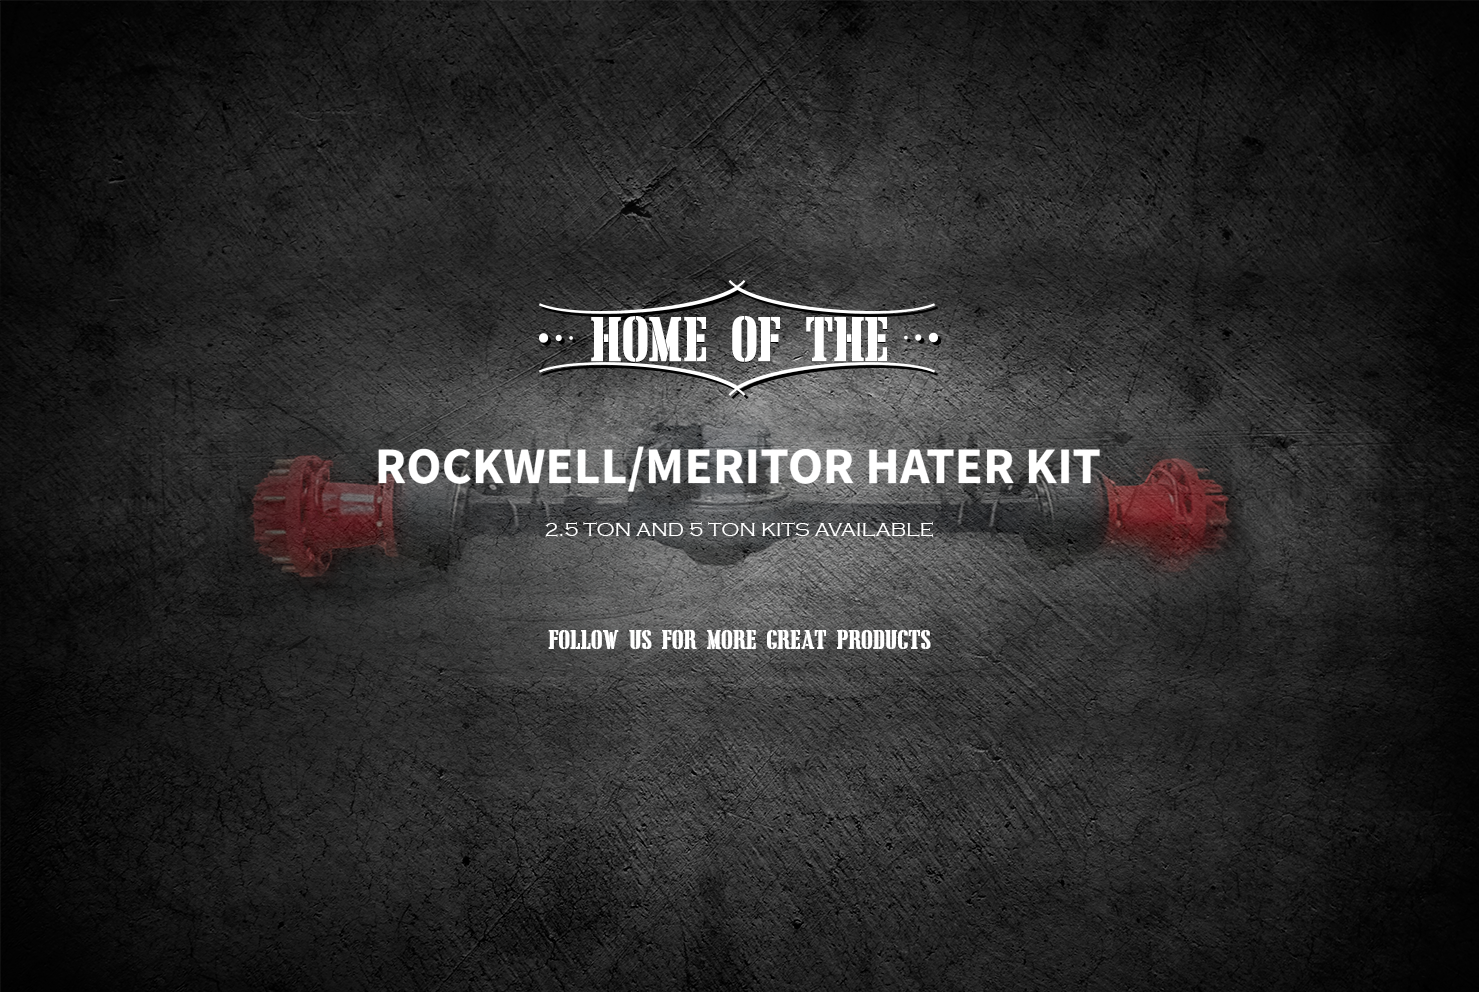 Rockwell/Meritor Hater Kit